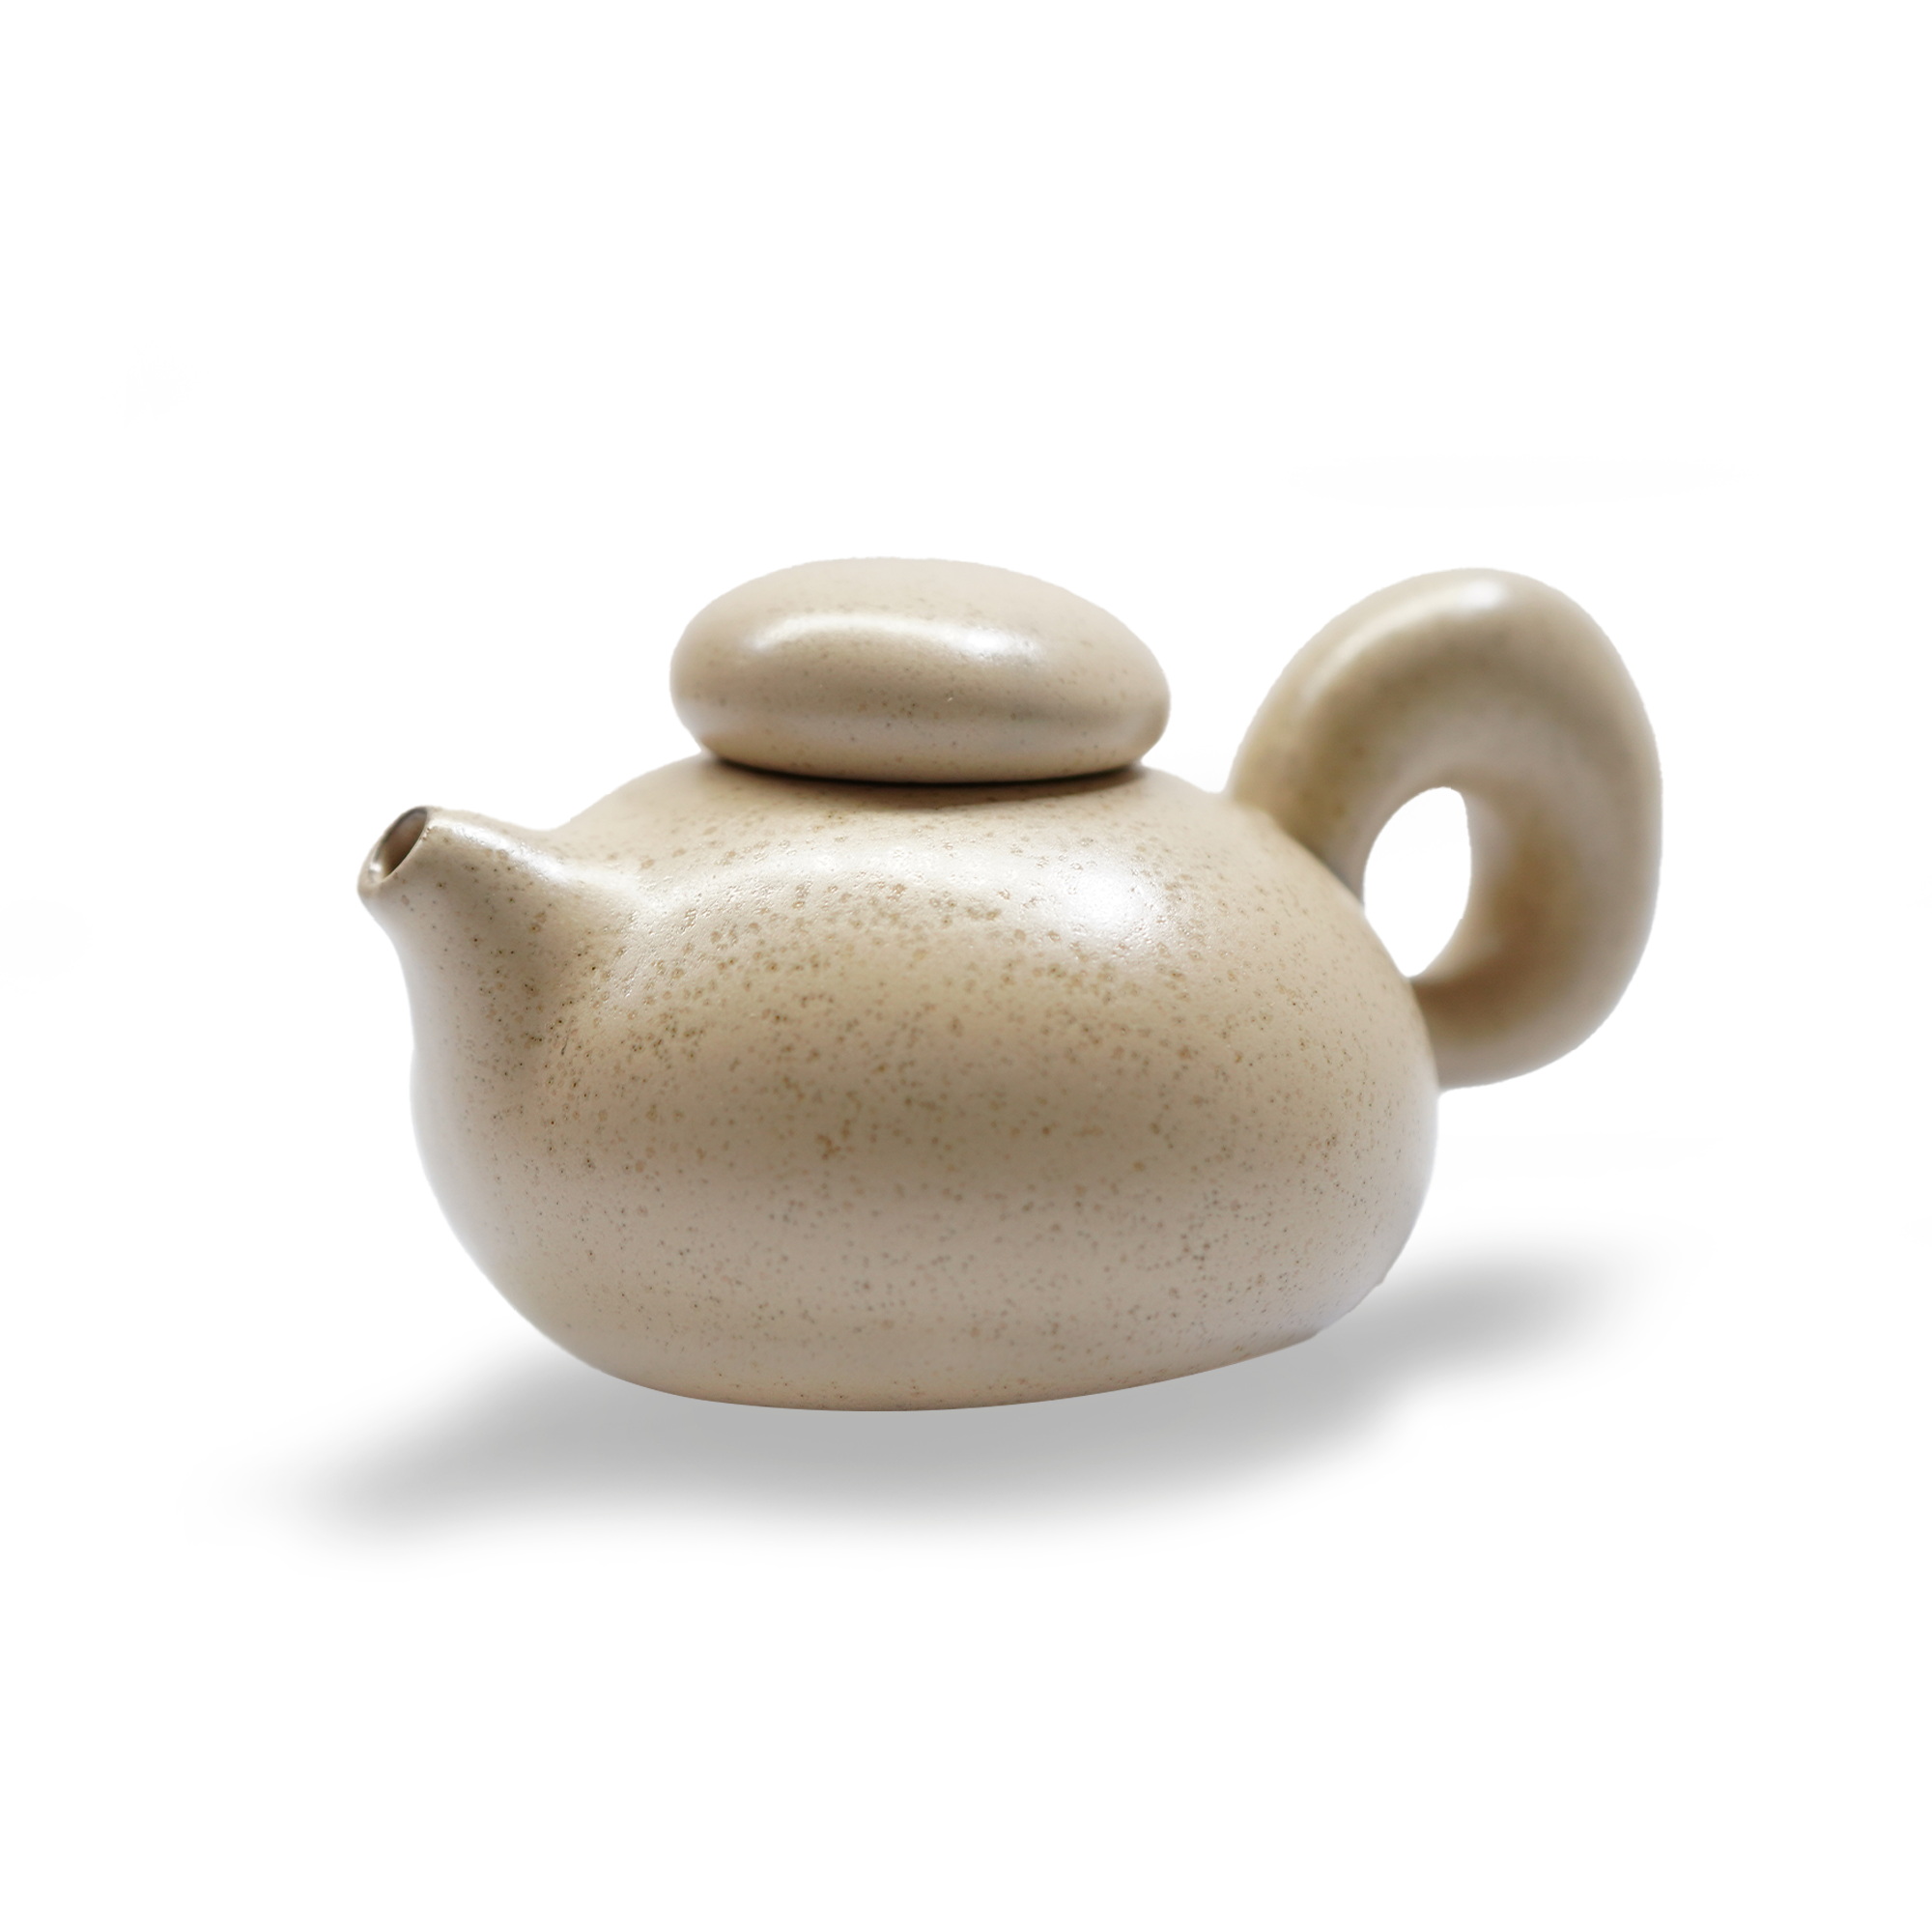 إبريق قهوة/شاي زن الآسيوي فقط E711-C-04197  Teapot Only